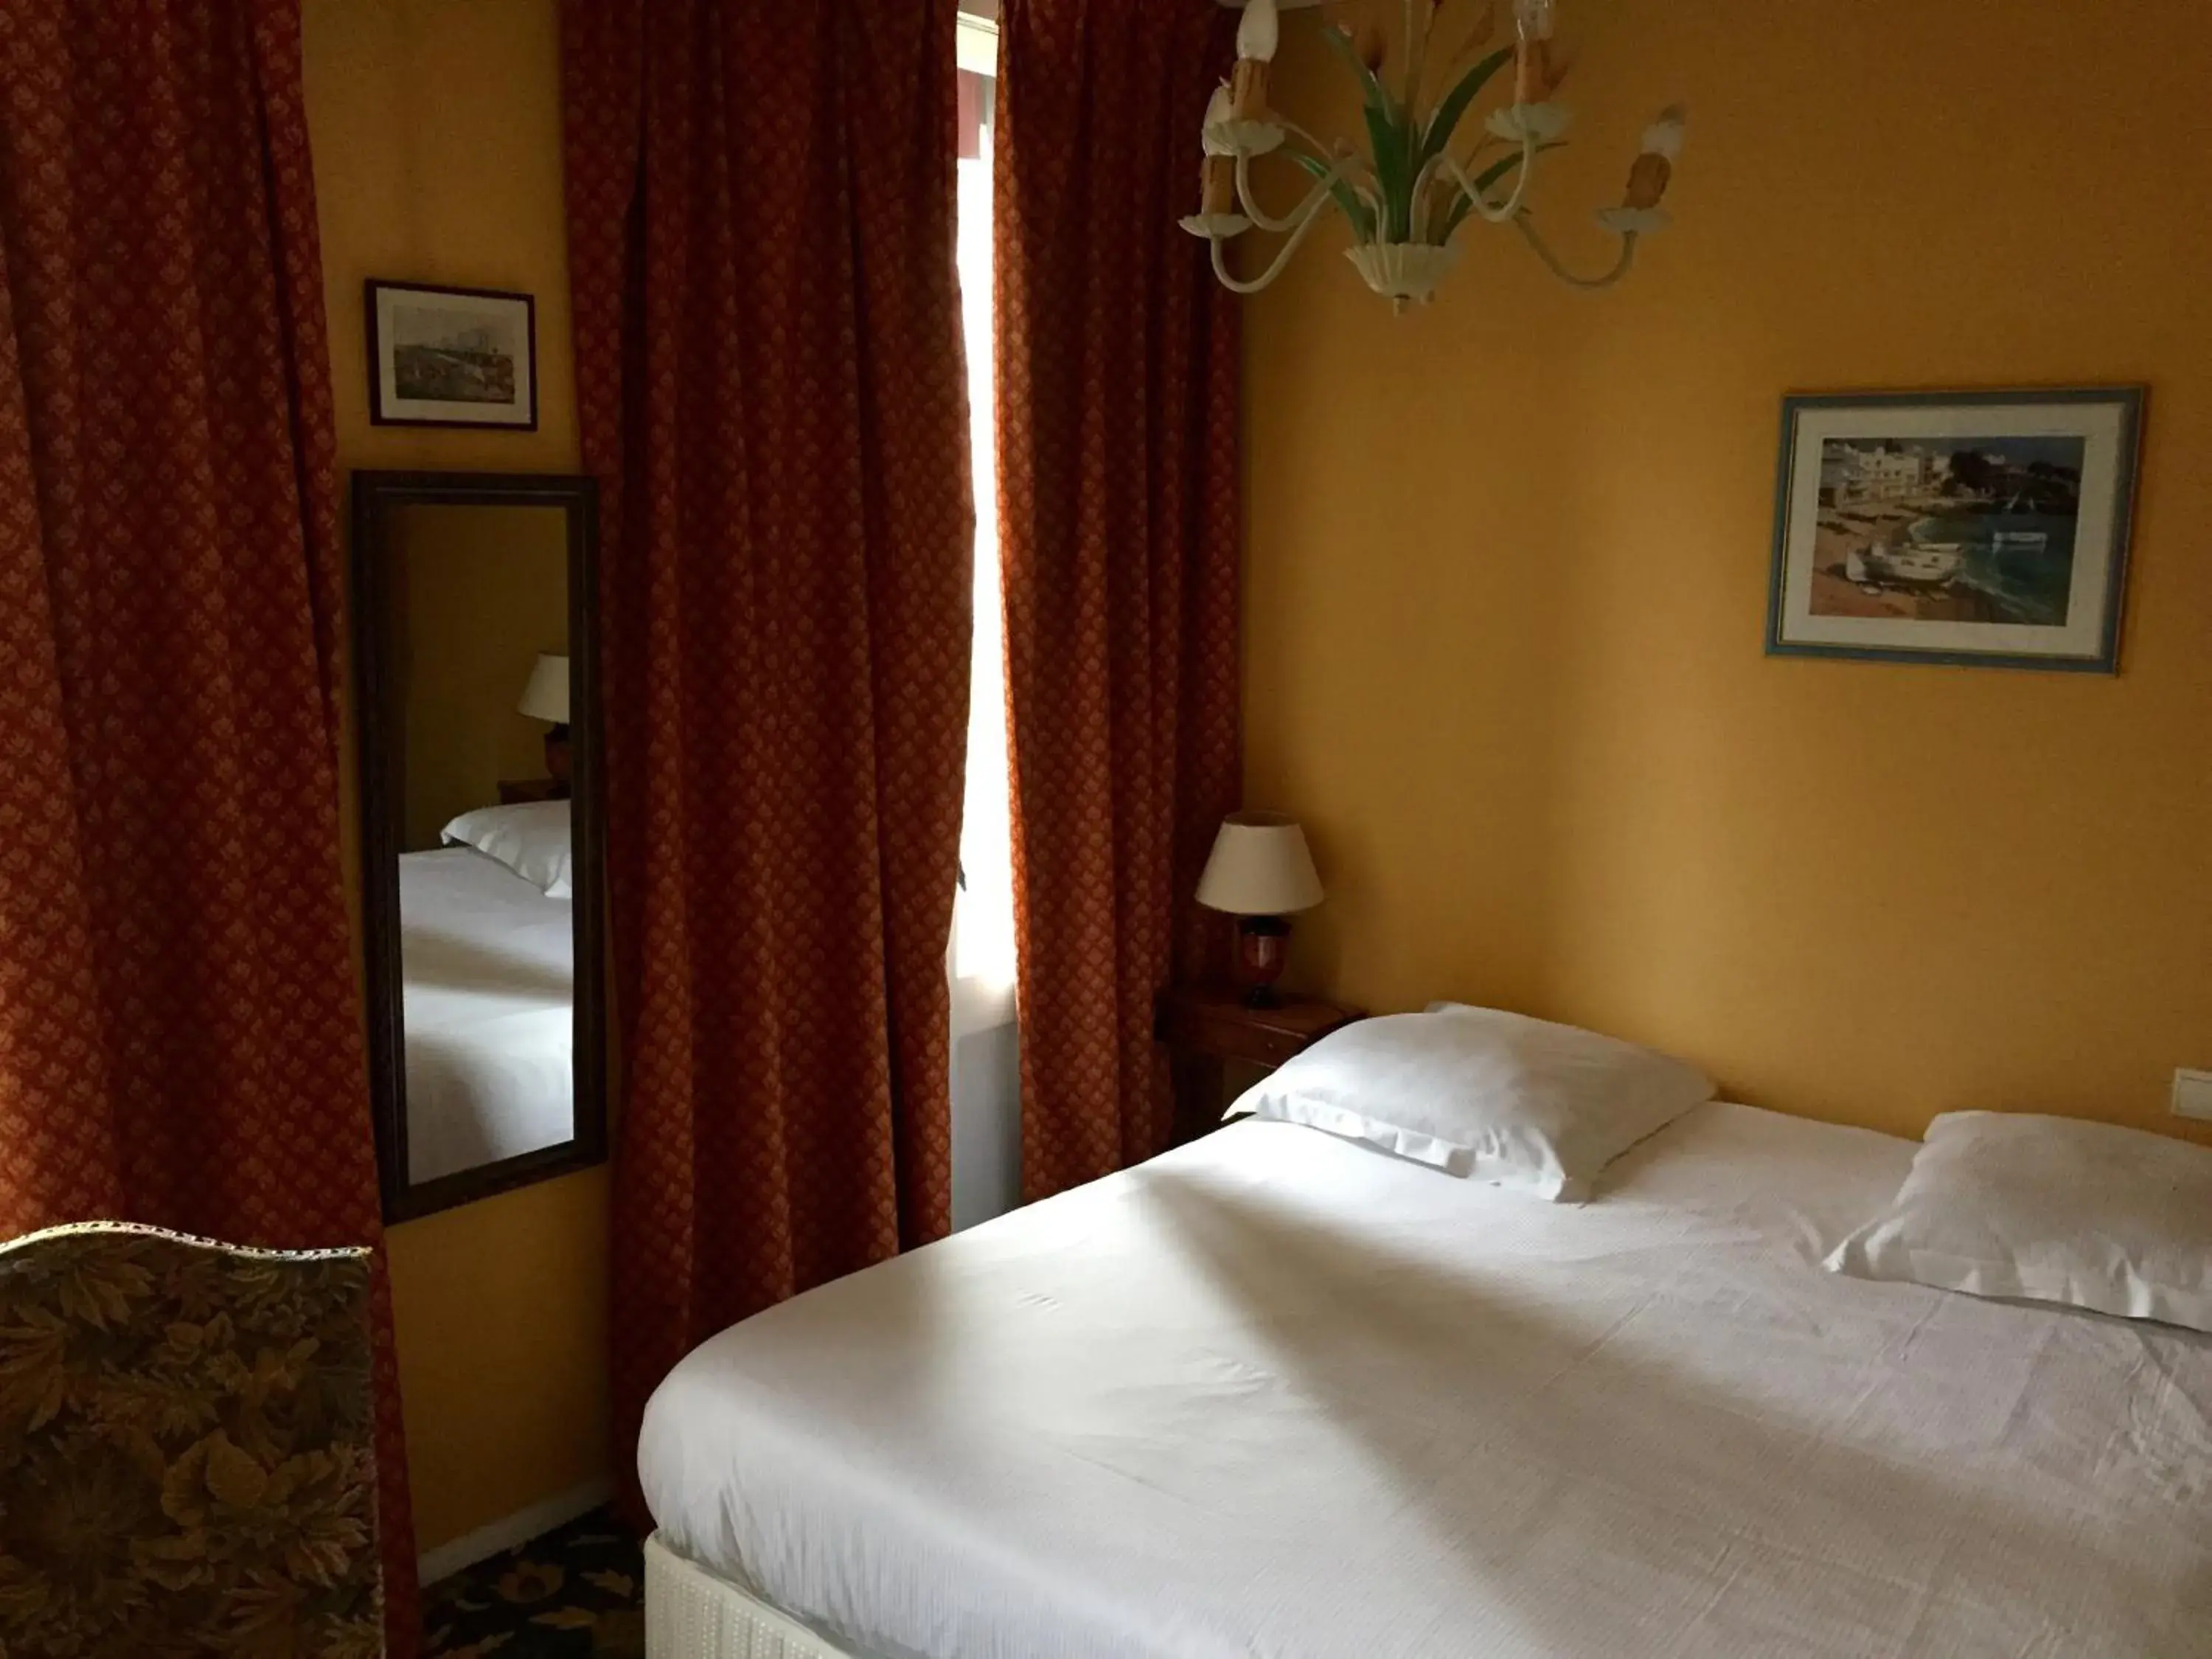 Decorative detail, Bed in Hotel de Normandie